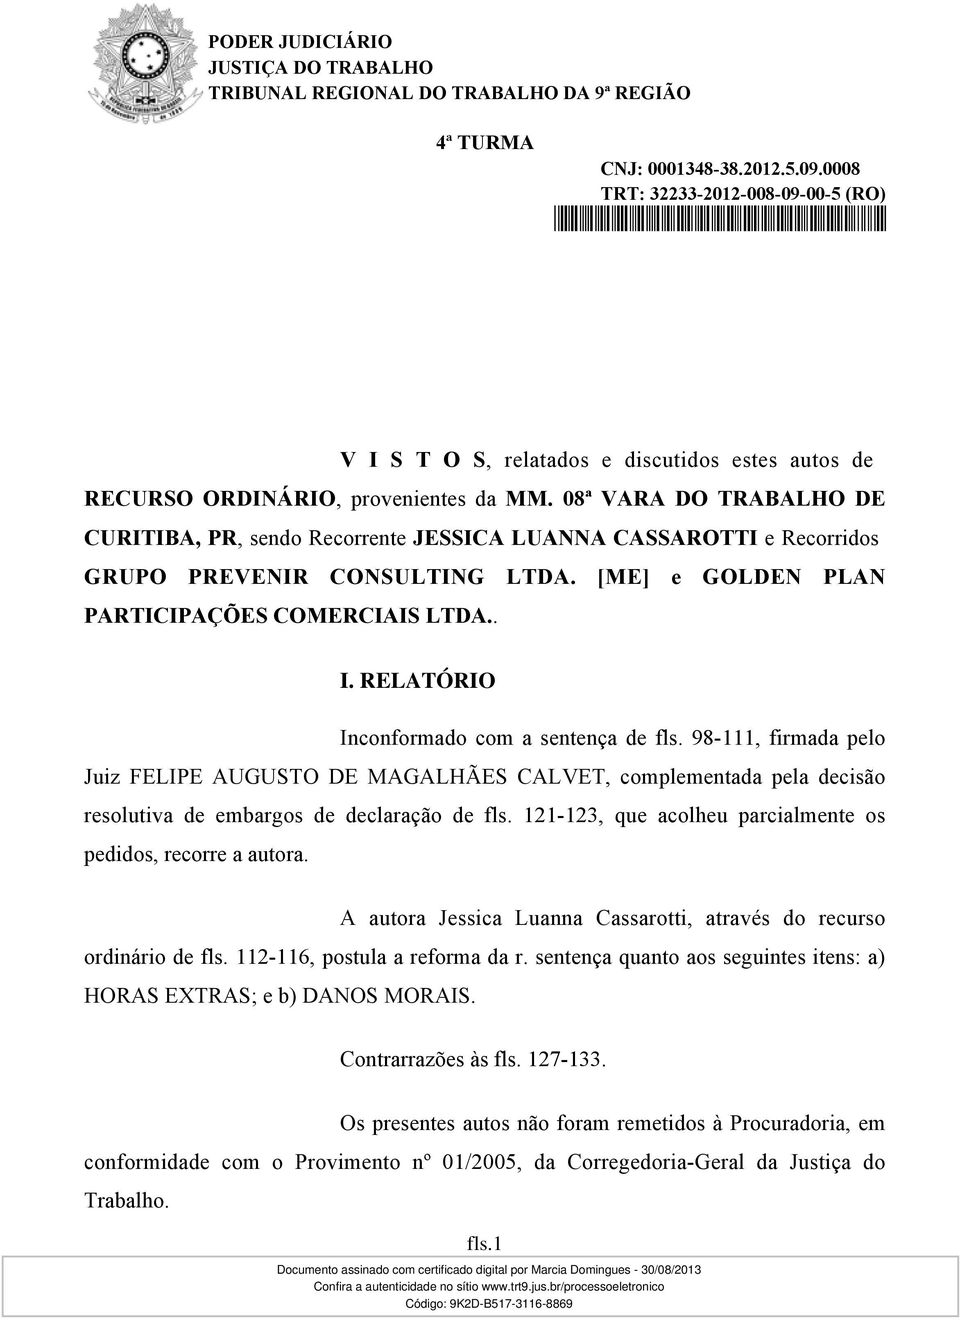 RELATÓRIO Inconformado com a sentença de fls. 98-111, firmada pelo Juiz FELIPE AUGUSTO DE MAGALHÃES CALVET, complementada pela decisão resolutiva de embargos de declaração de fls.